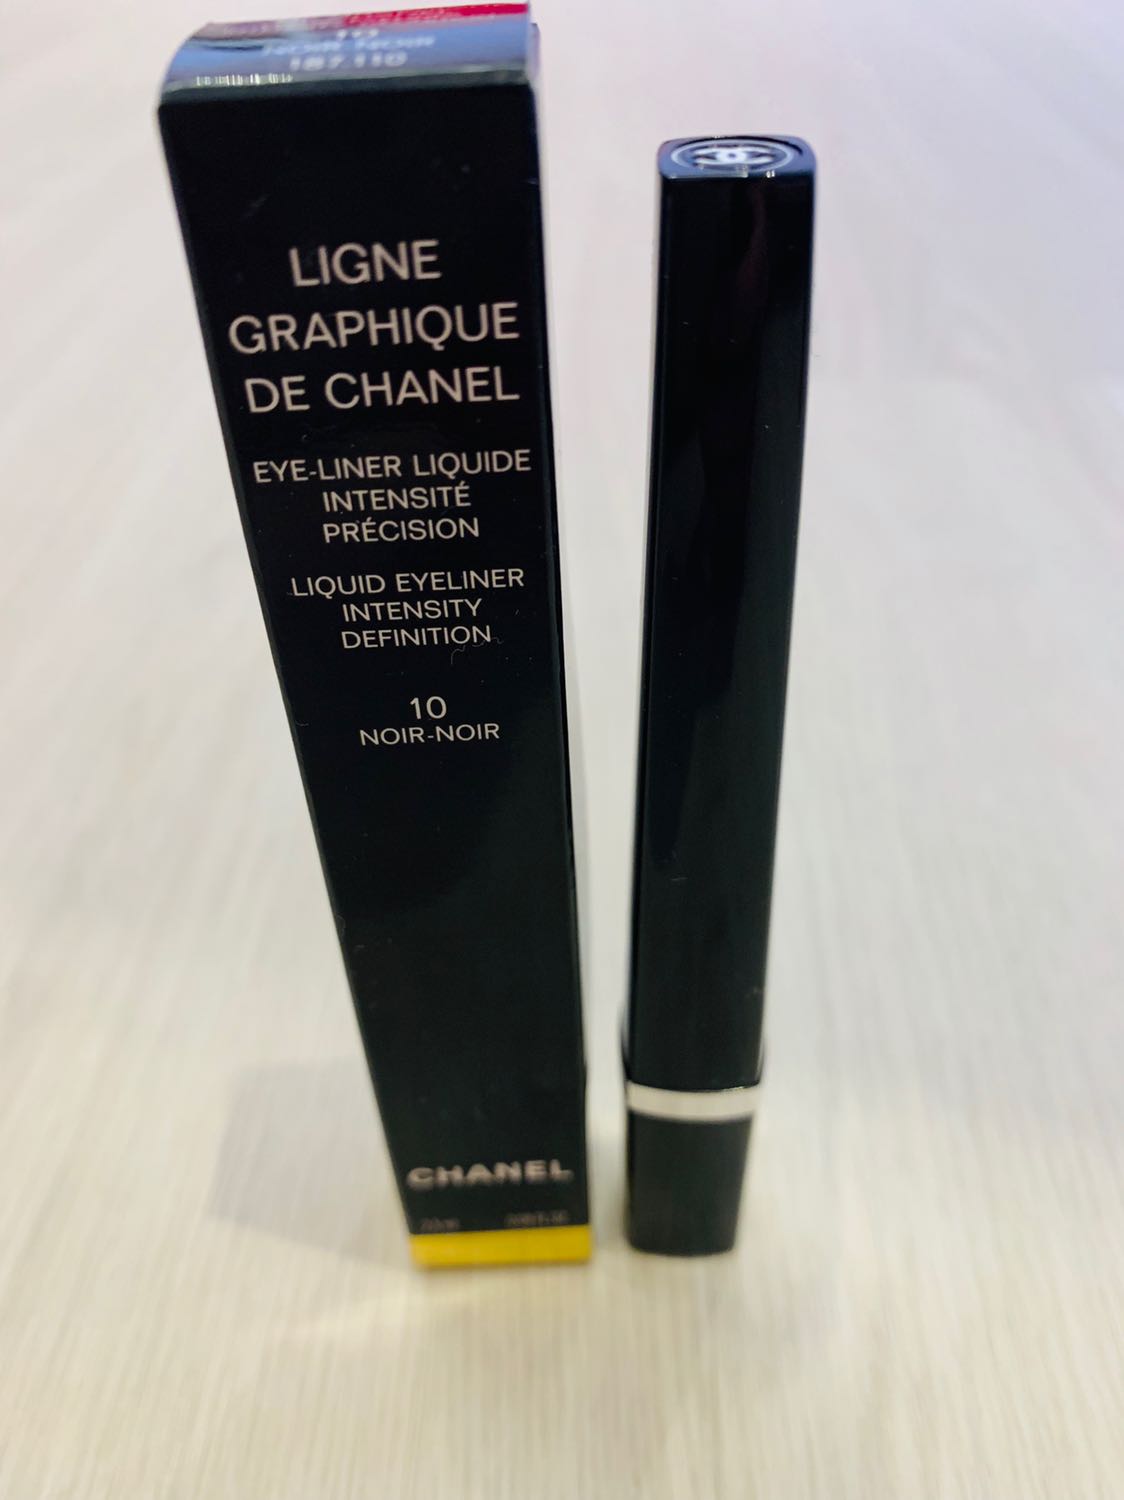 Ligne Graphique De Chanel Liquid Eyeliner - 10 Noir-Noir by Chanel